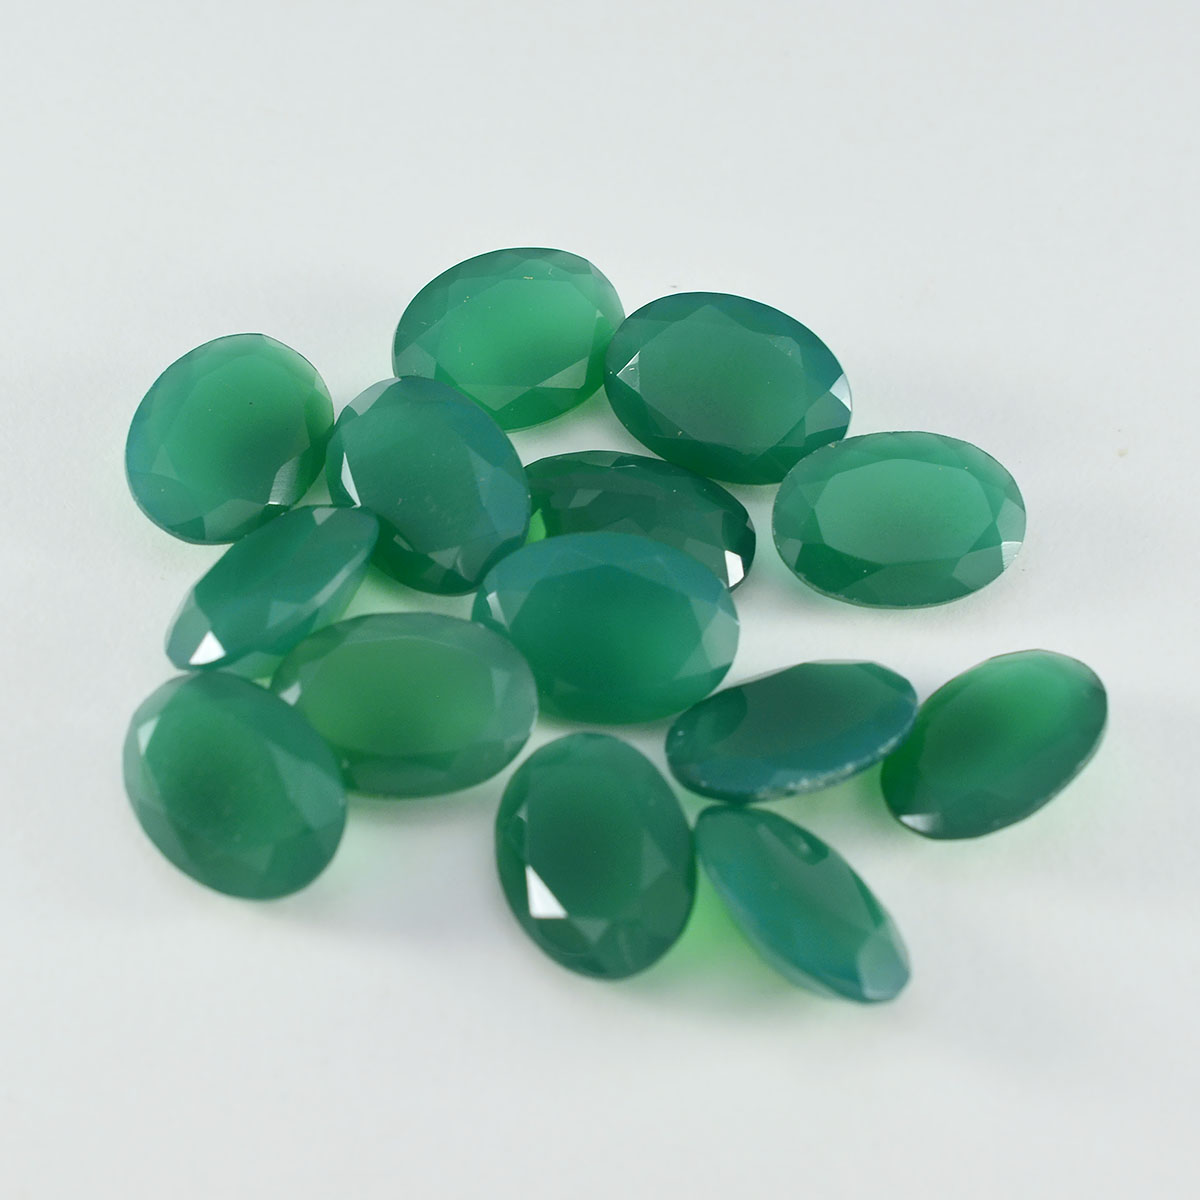 riyogems 1 шт. настоящий зеленый оникс ограненный 6x8 мм овальной формы прекрасный качественный свободный драгоценный камень